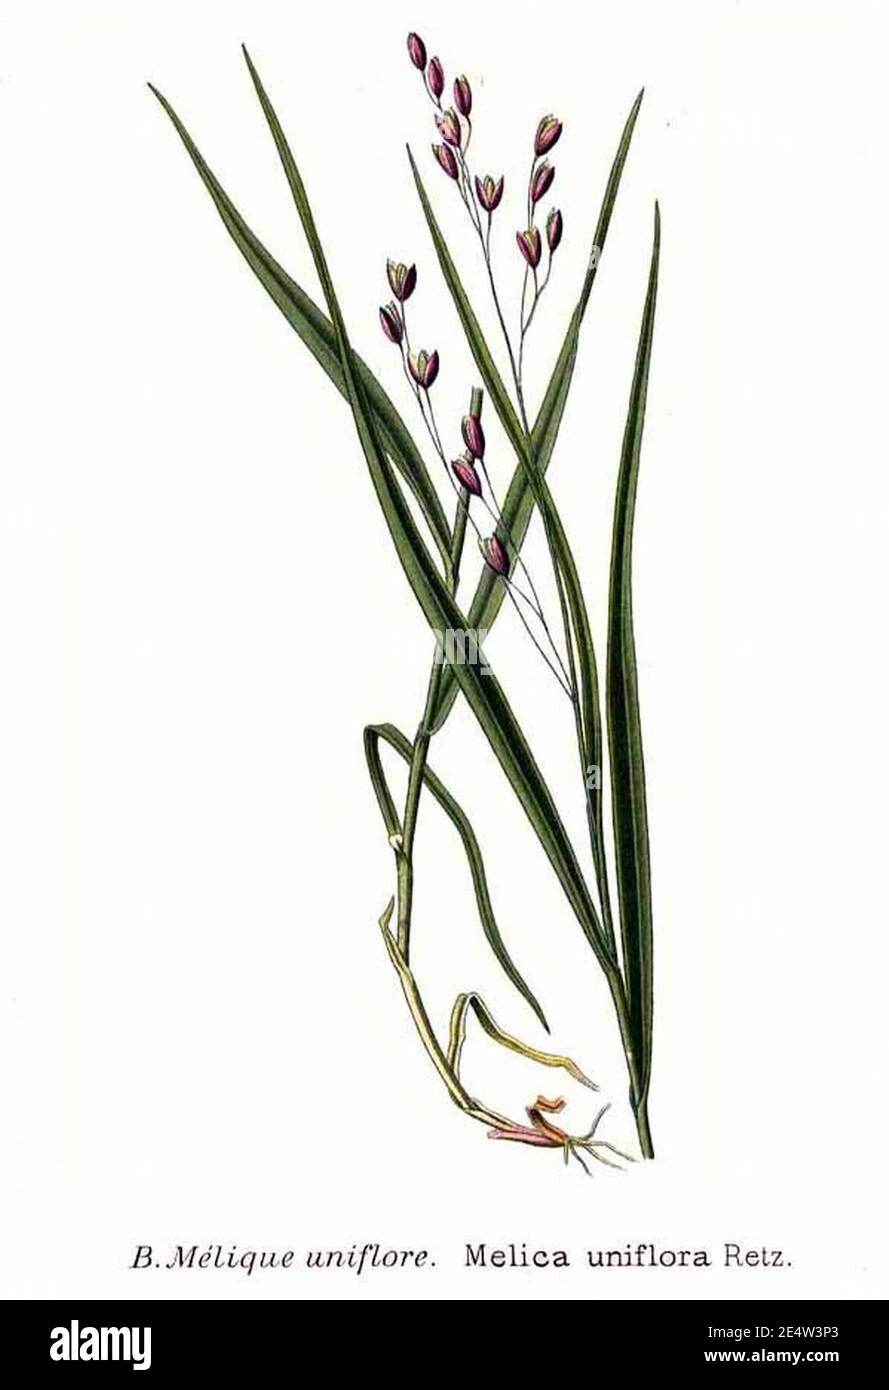 Melica uniflora Retz. Stock Photo